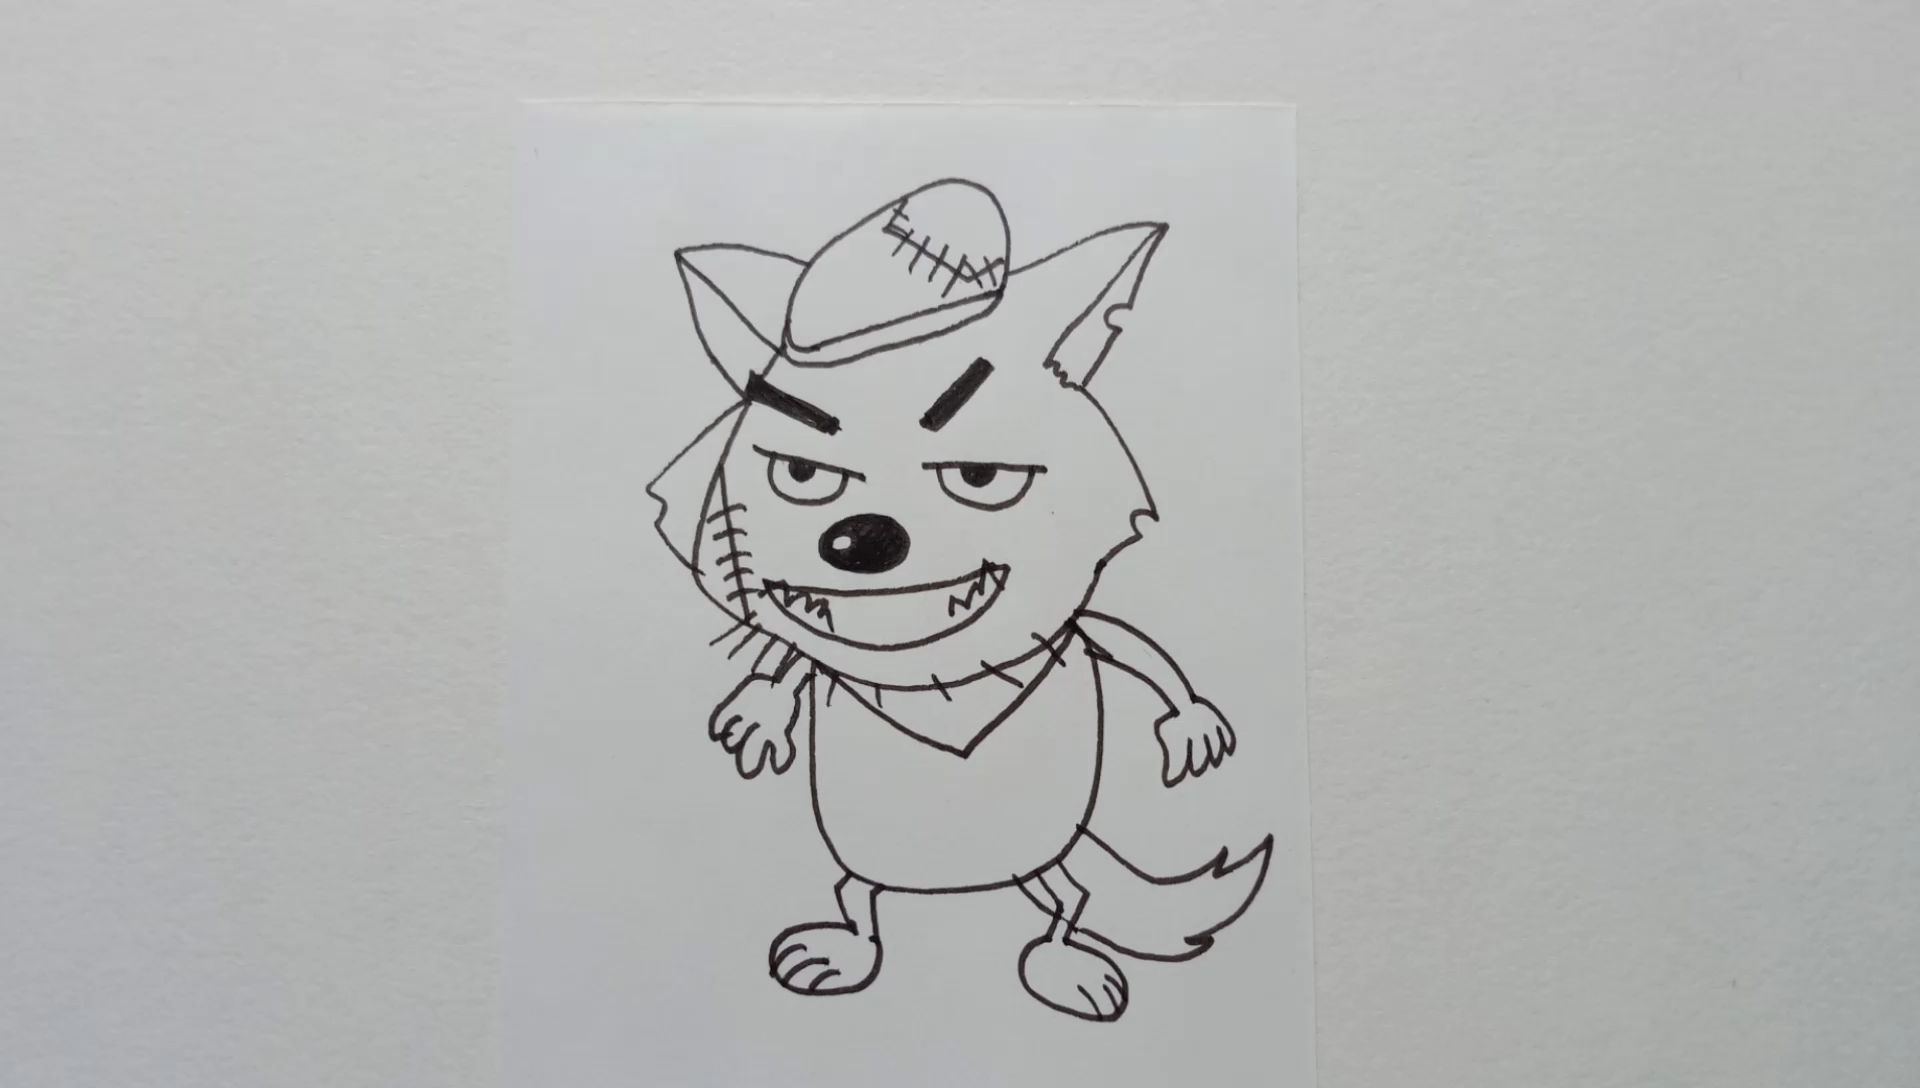 简笔画灰太狼的画法图片